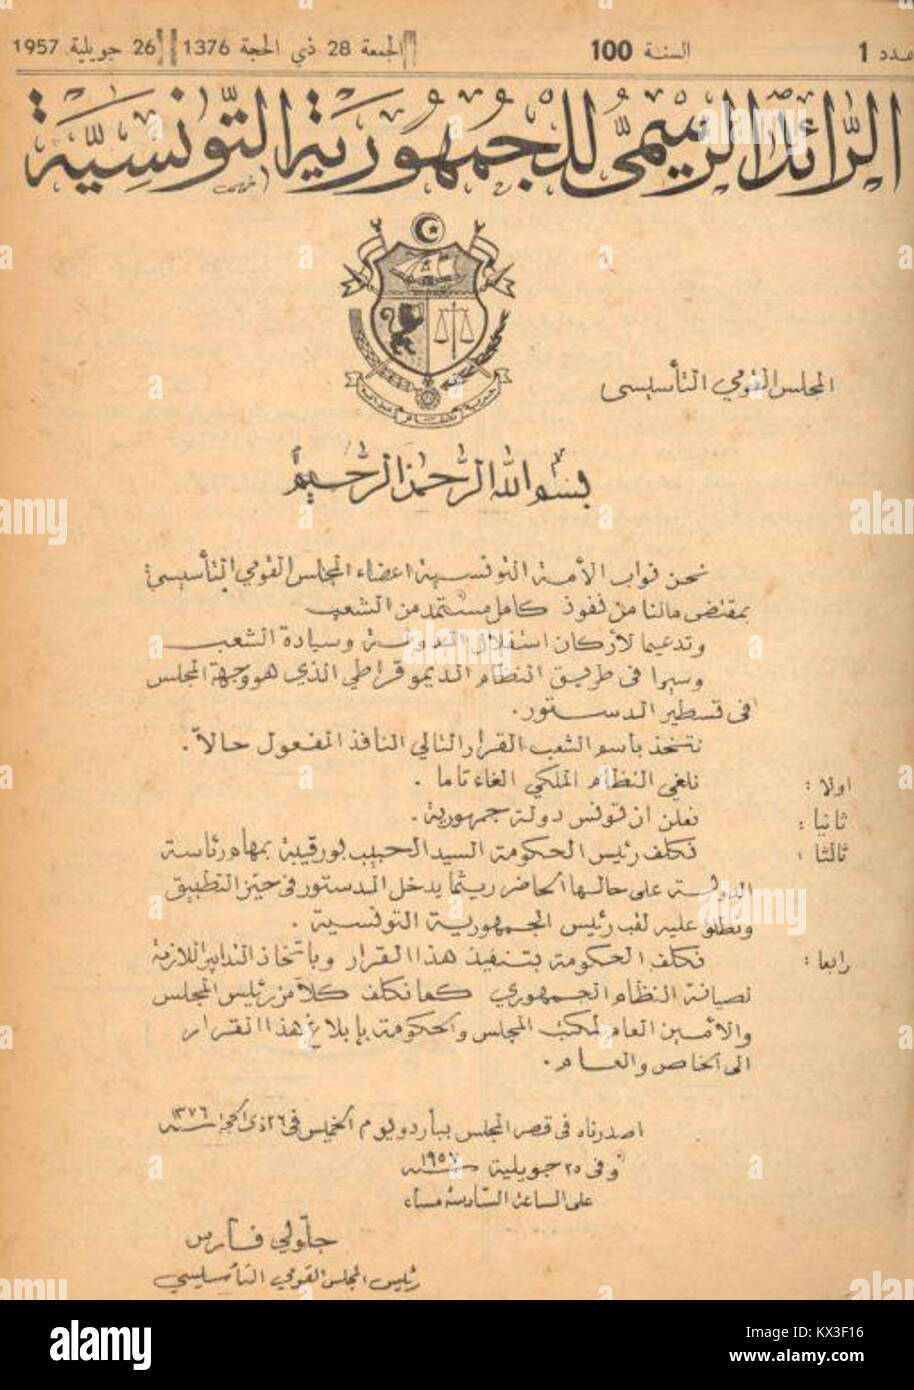 Déclaration de la République 26 Juillet 1957 - Tunisie Stockfoto